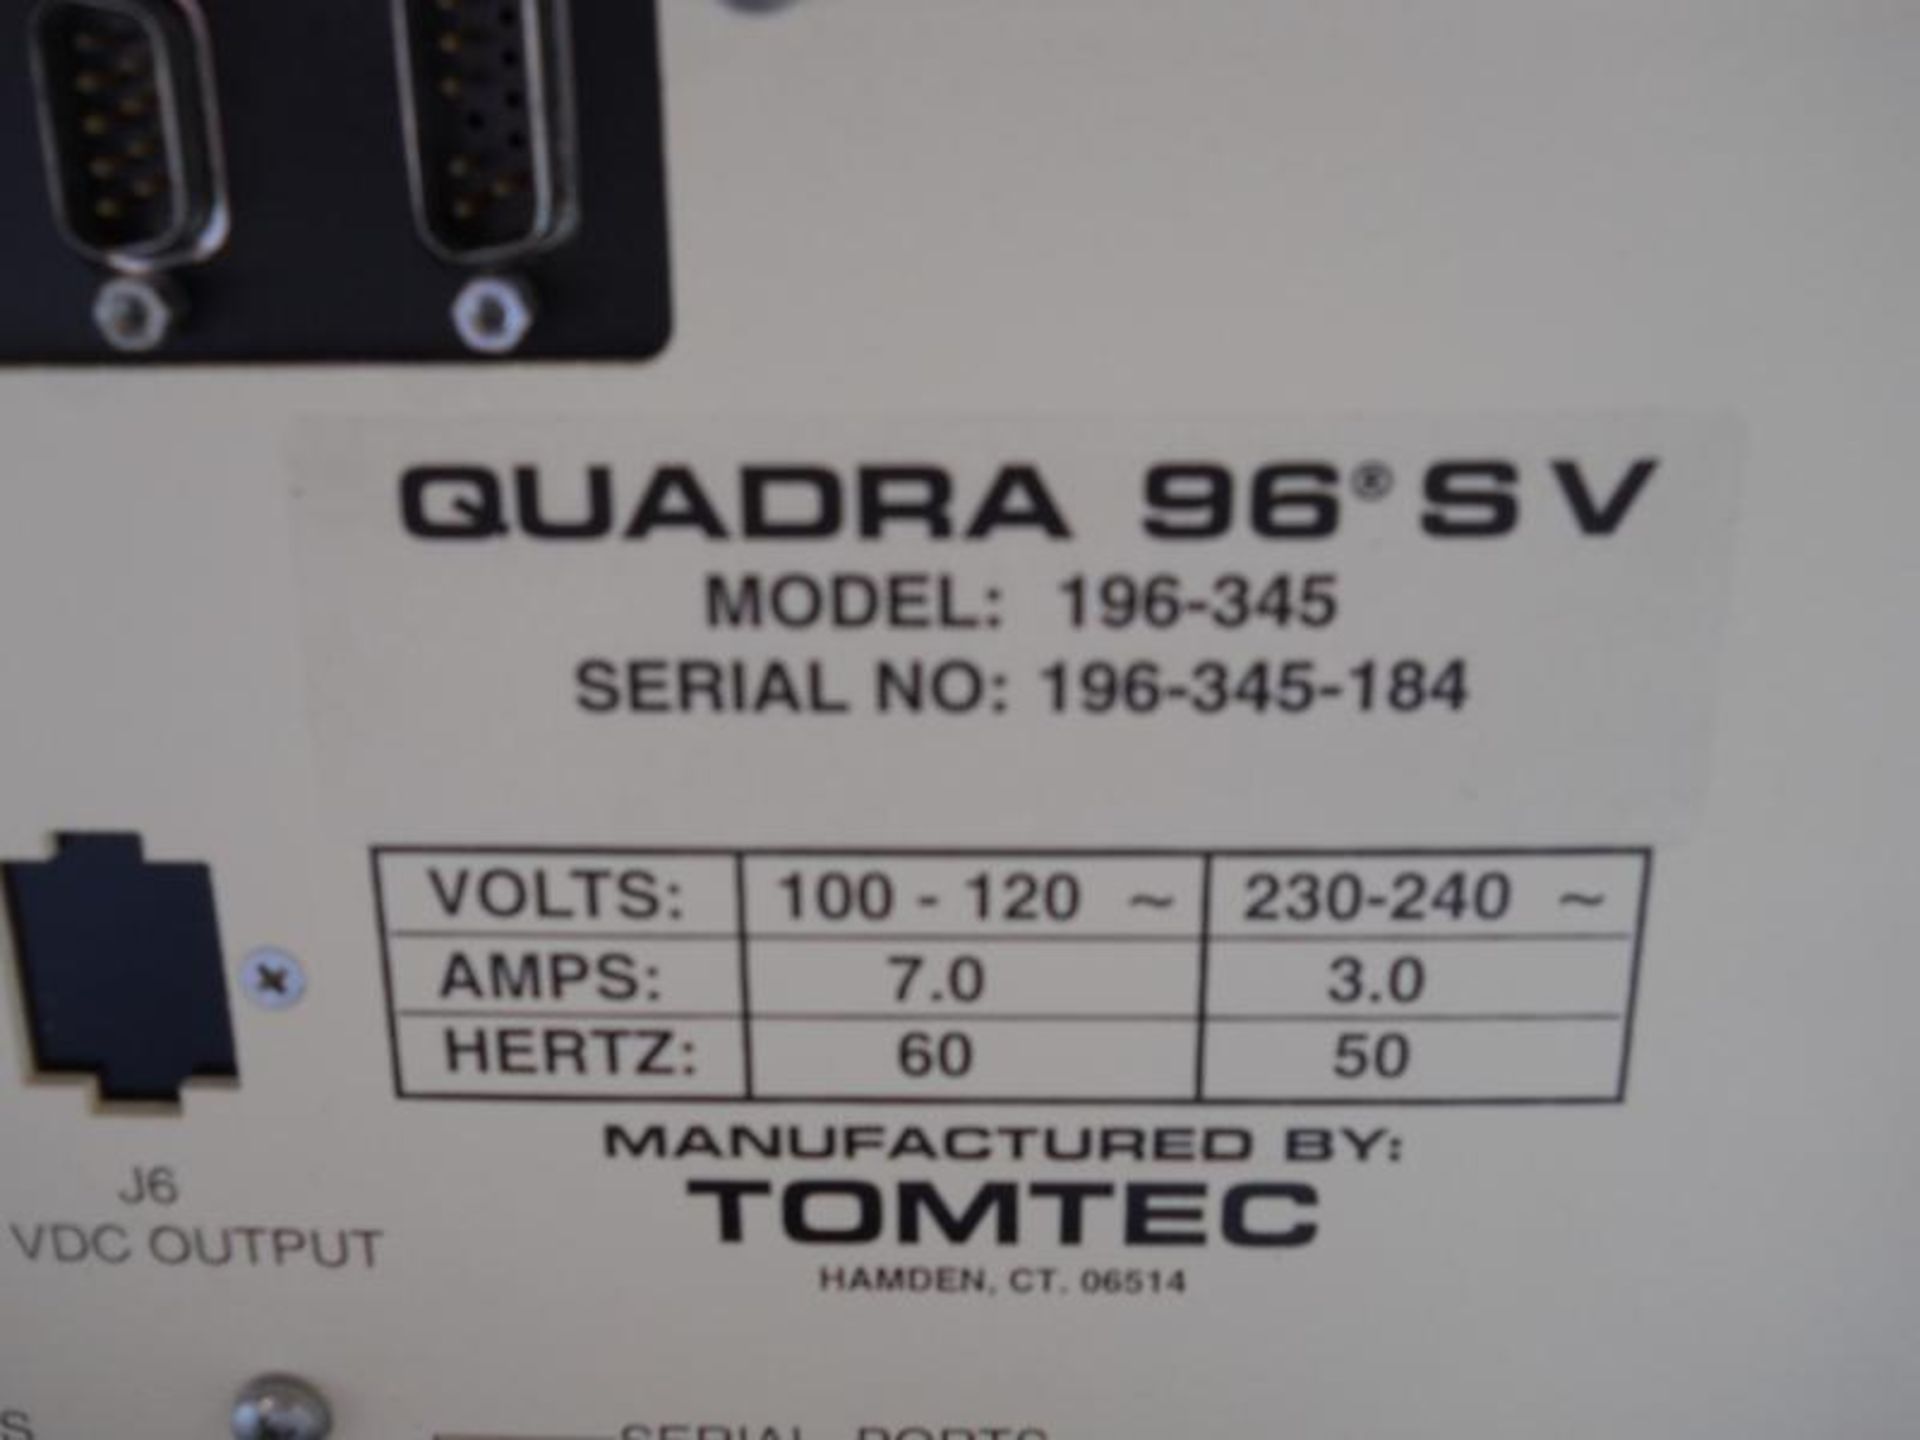 Tomtec Quadra 96 SV Model 196-345 W/ Vacuum Tank, Qty 1, 330901484838 - Image 14 of 17